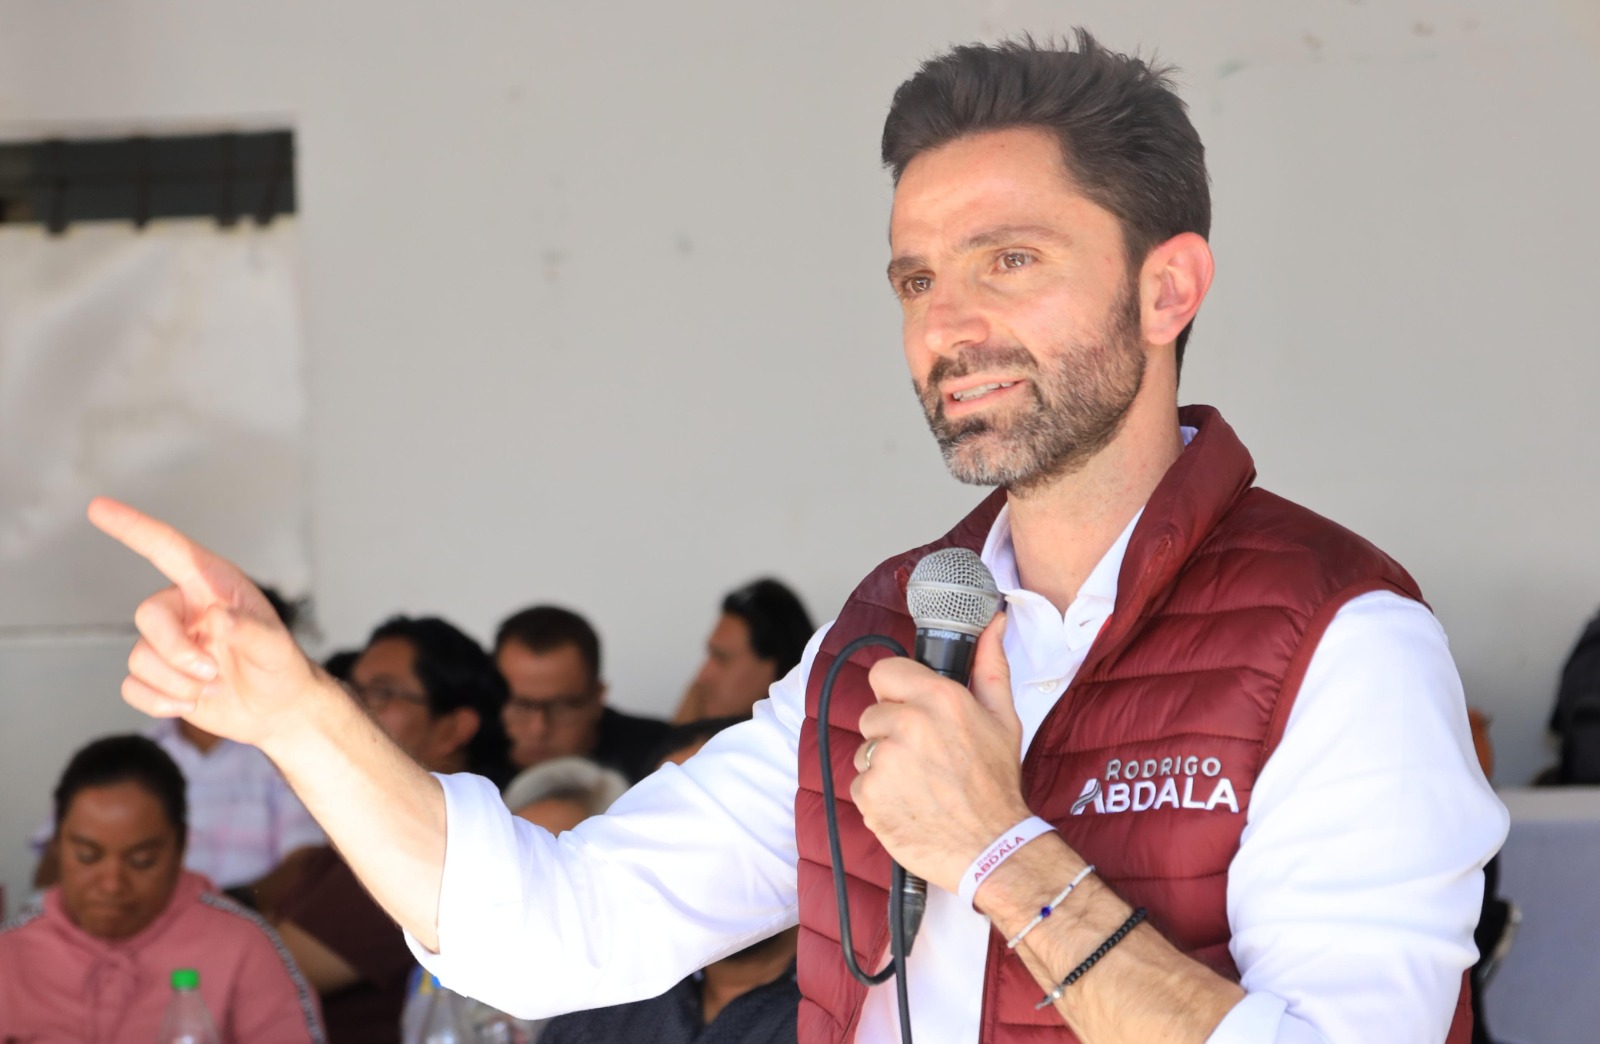 Inclusividad y compromiso: Rodrigo abdala en carrera por Puebla